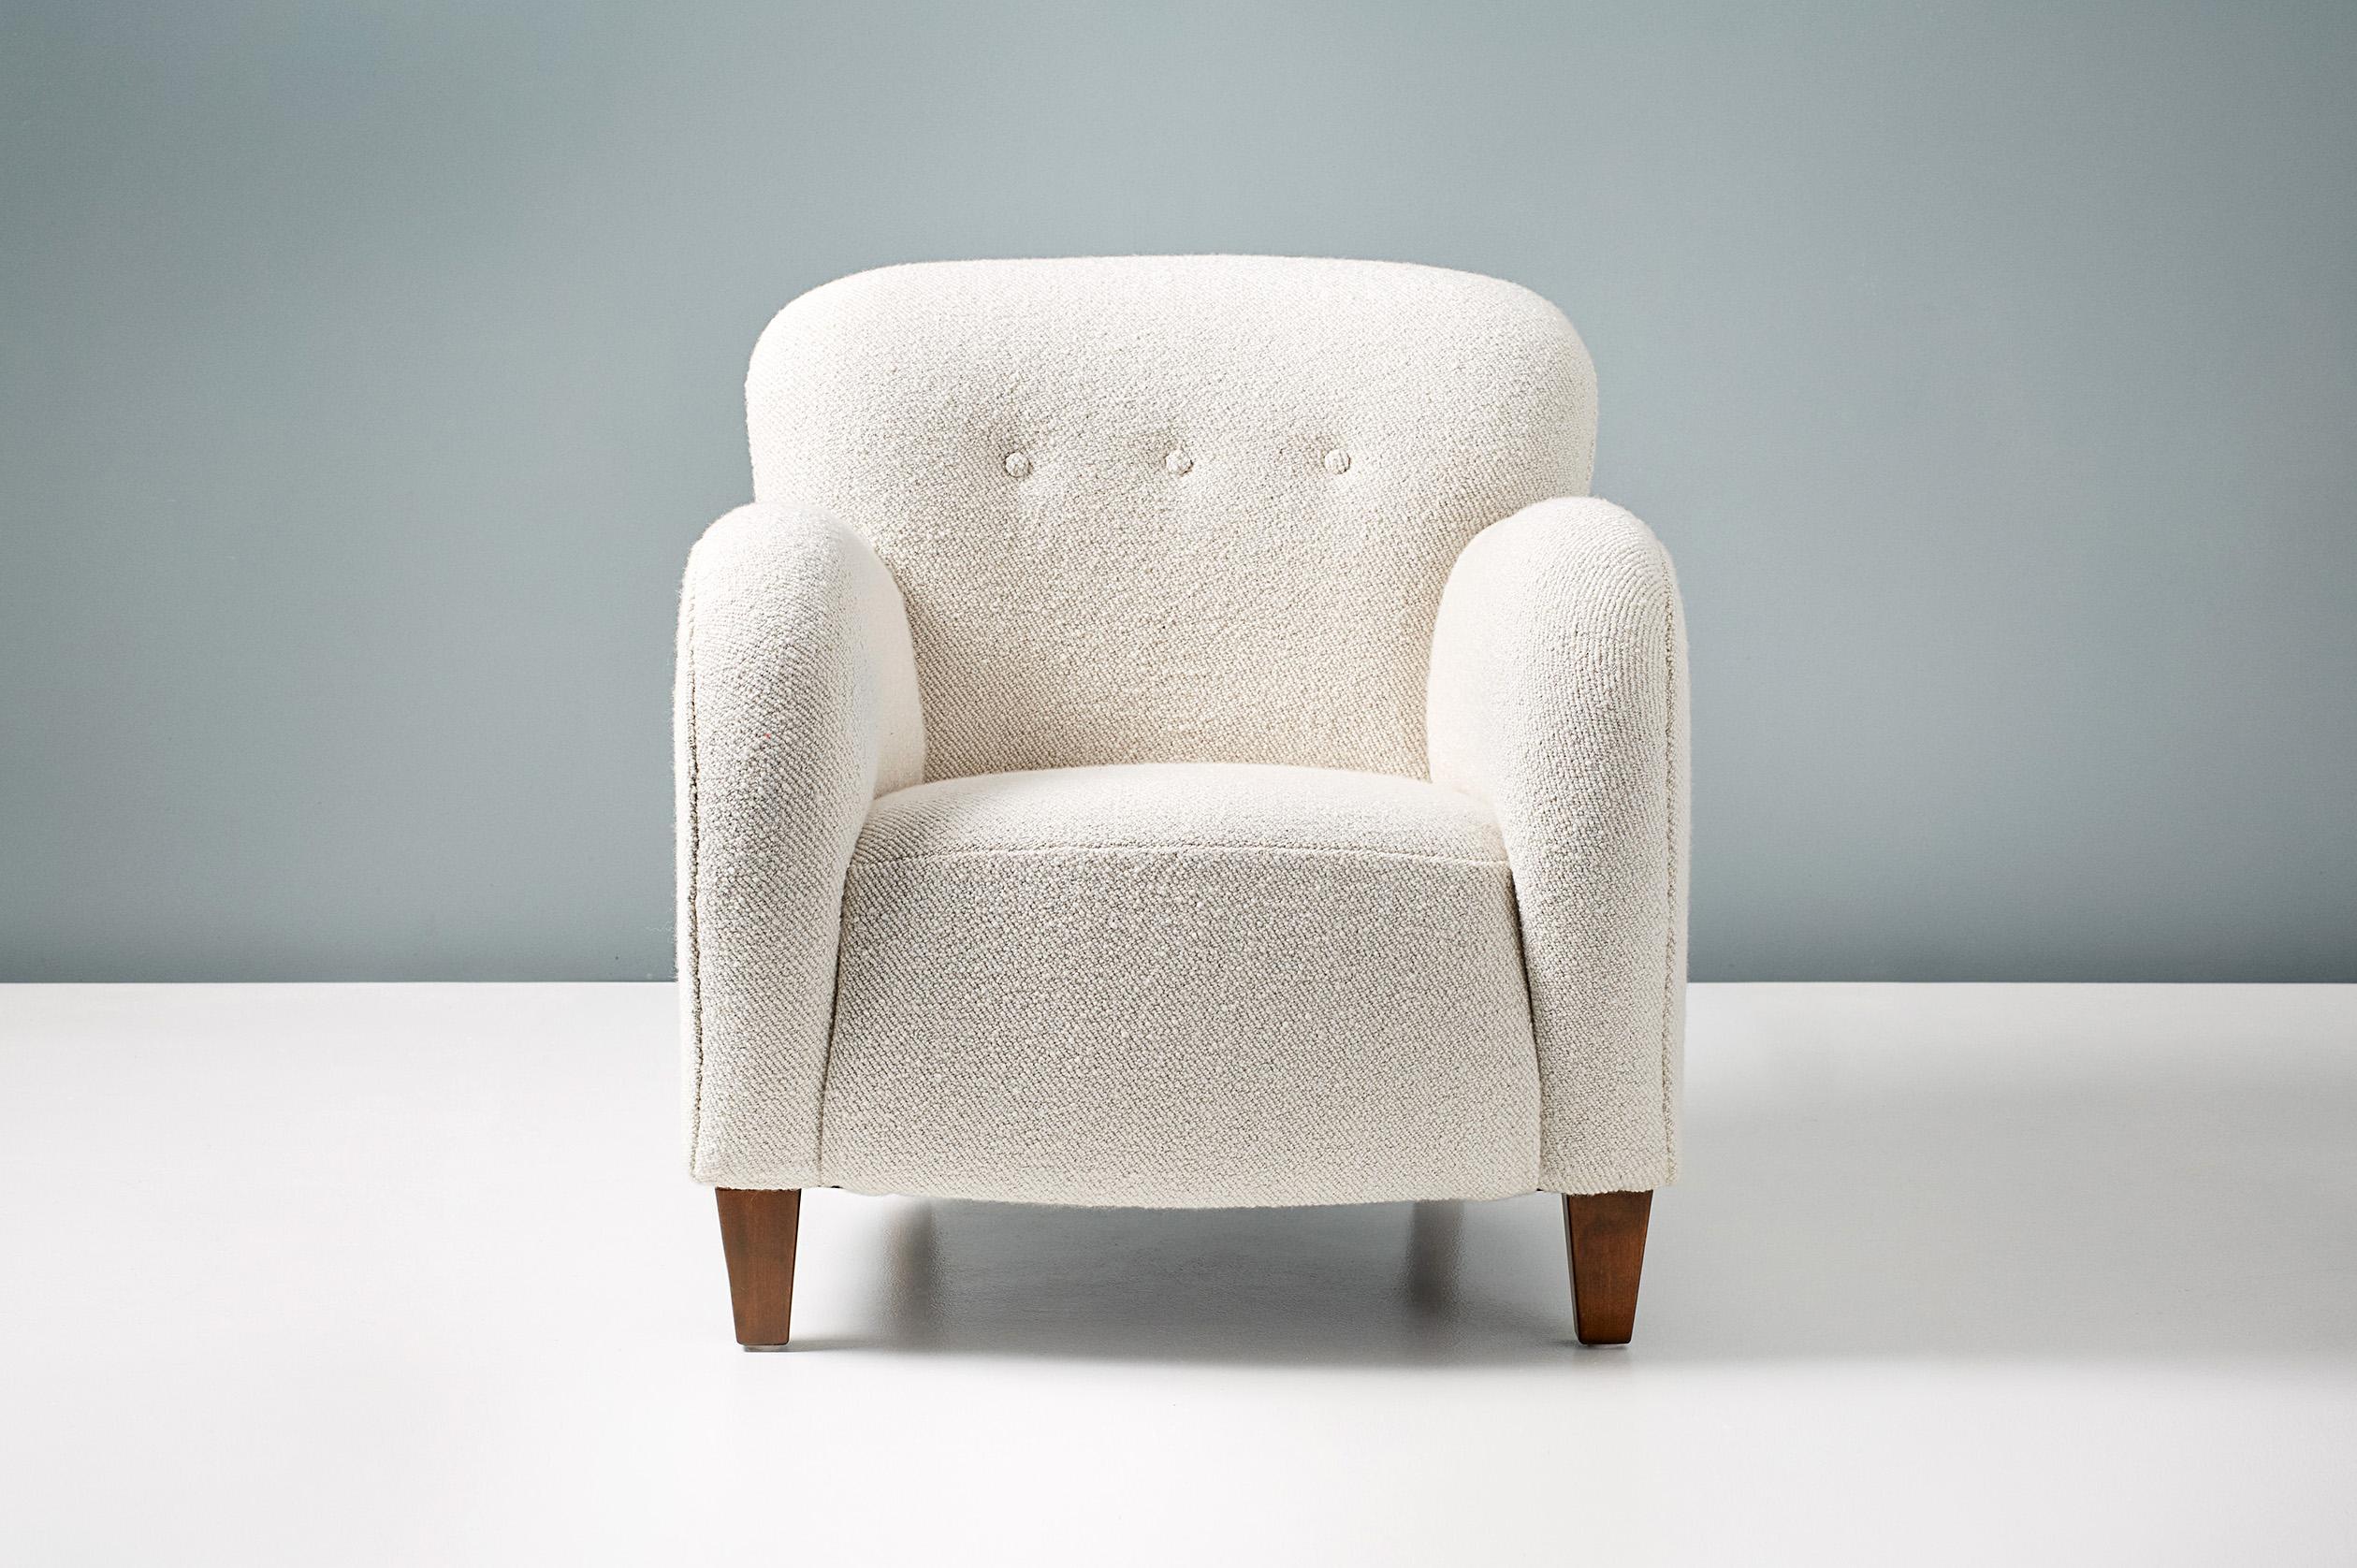 Sessel eines dänischen Schreiners, ca. 1950er Jahre.

Sessel in der Art von Flemming Lassen, hergestellt in Dänemark von einem anonymen Designer. Beine aus gebeizter Buche mit Polsterung aus einem neuen Wollmischbouclé-Stoff von Dedar